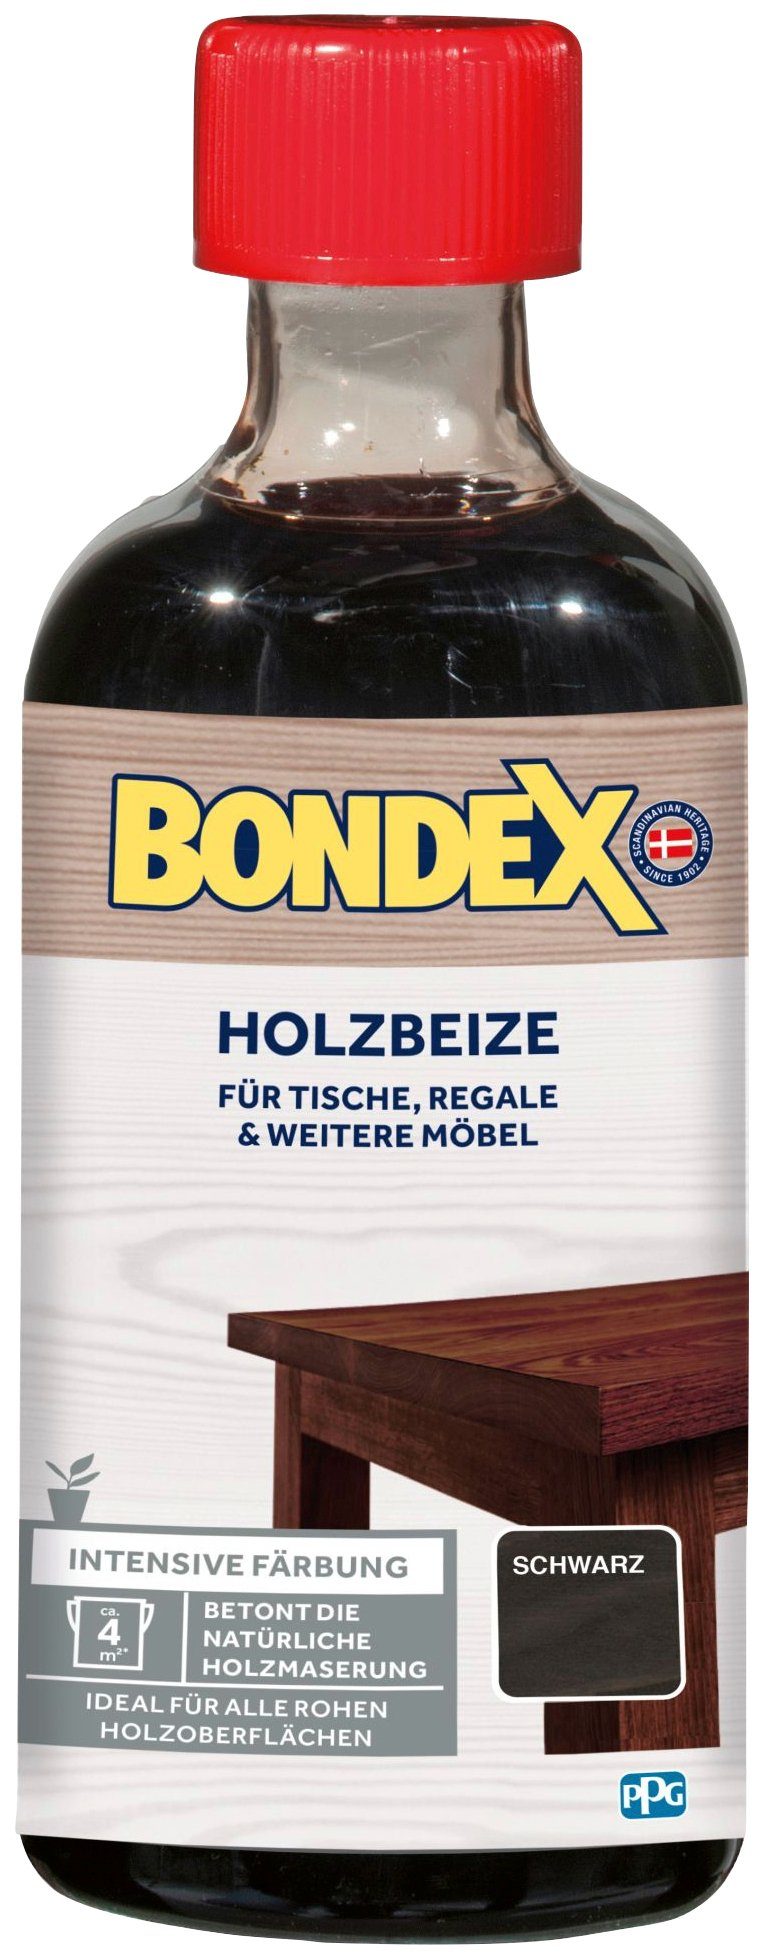 Bondex Lasur Tische, für Färbung, & weitere 0,25 HOLZBEIZE, Möbel, Regale l intensive schwarz